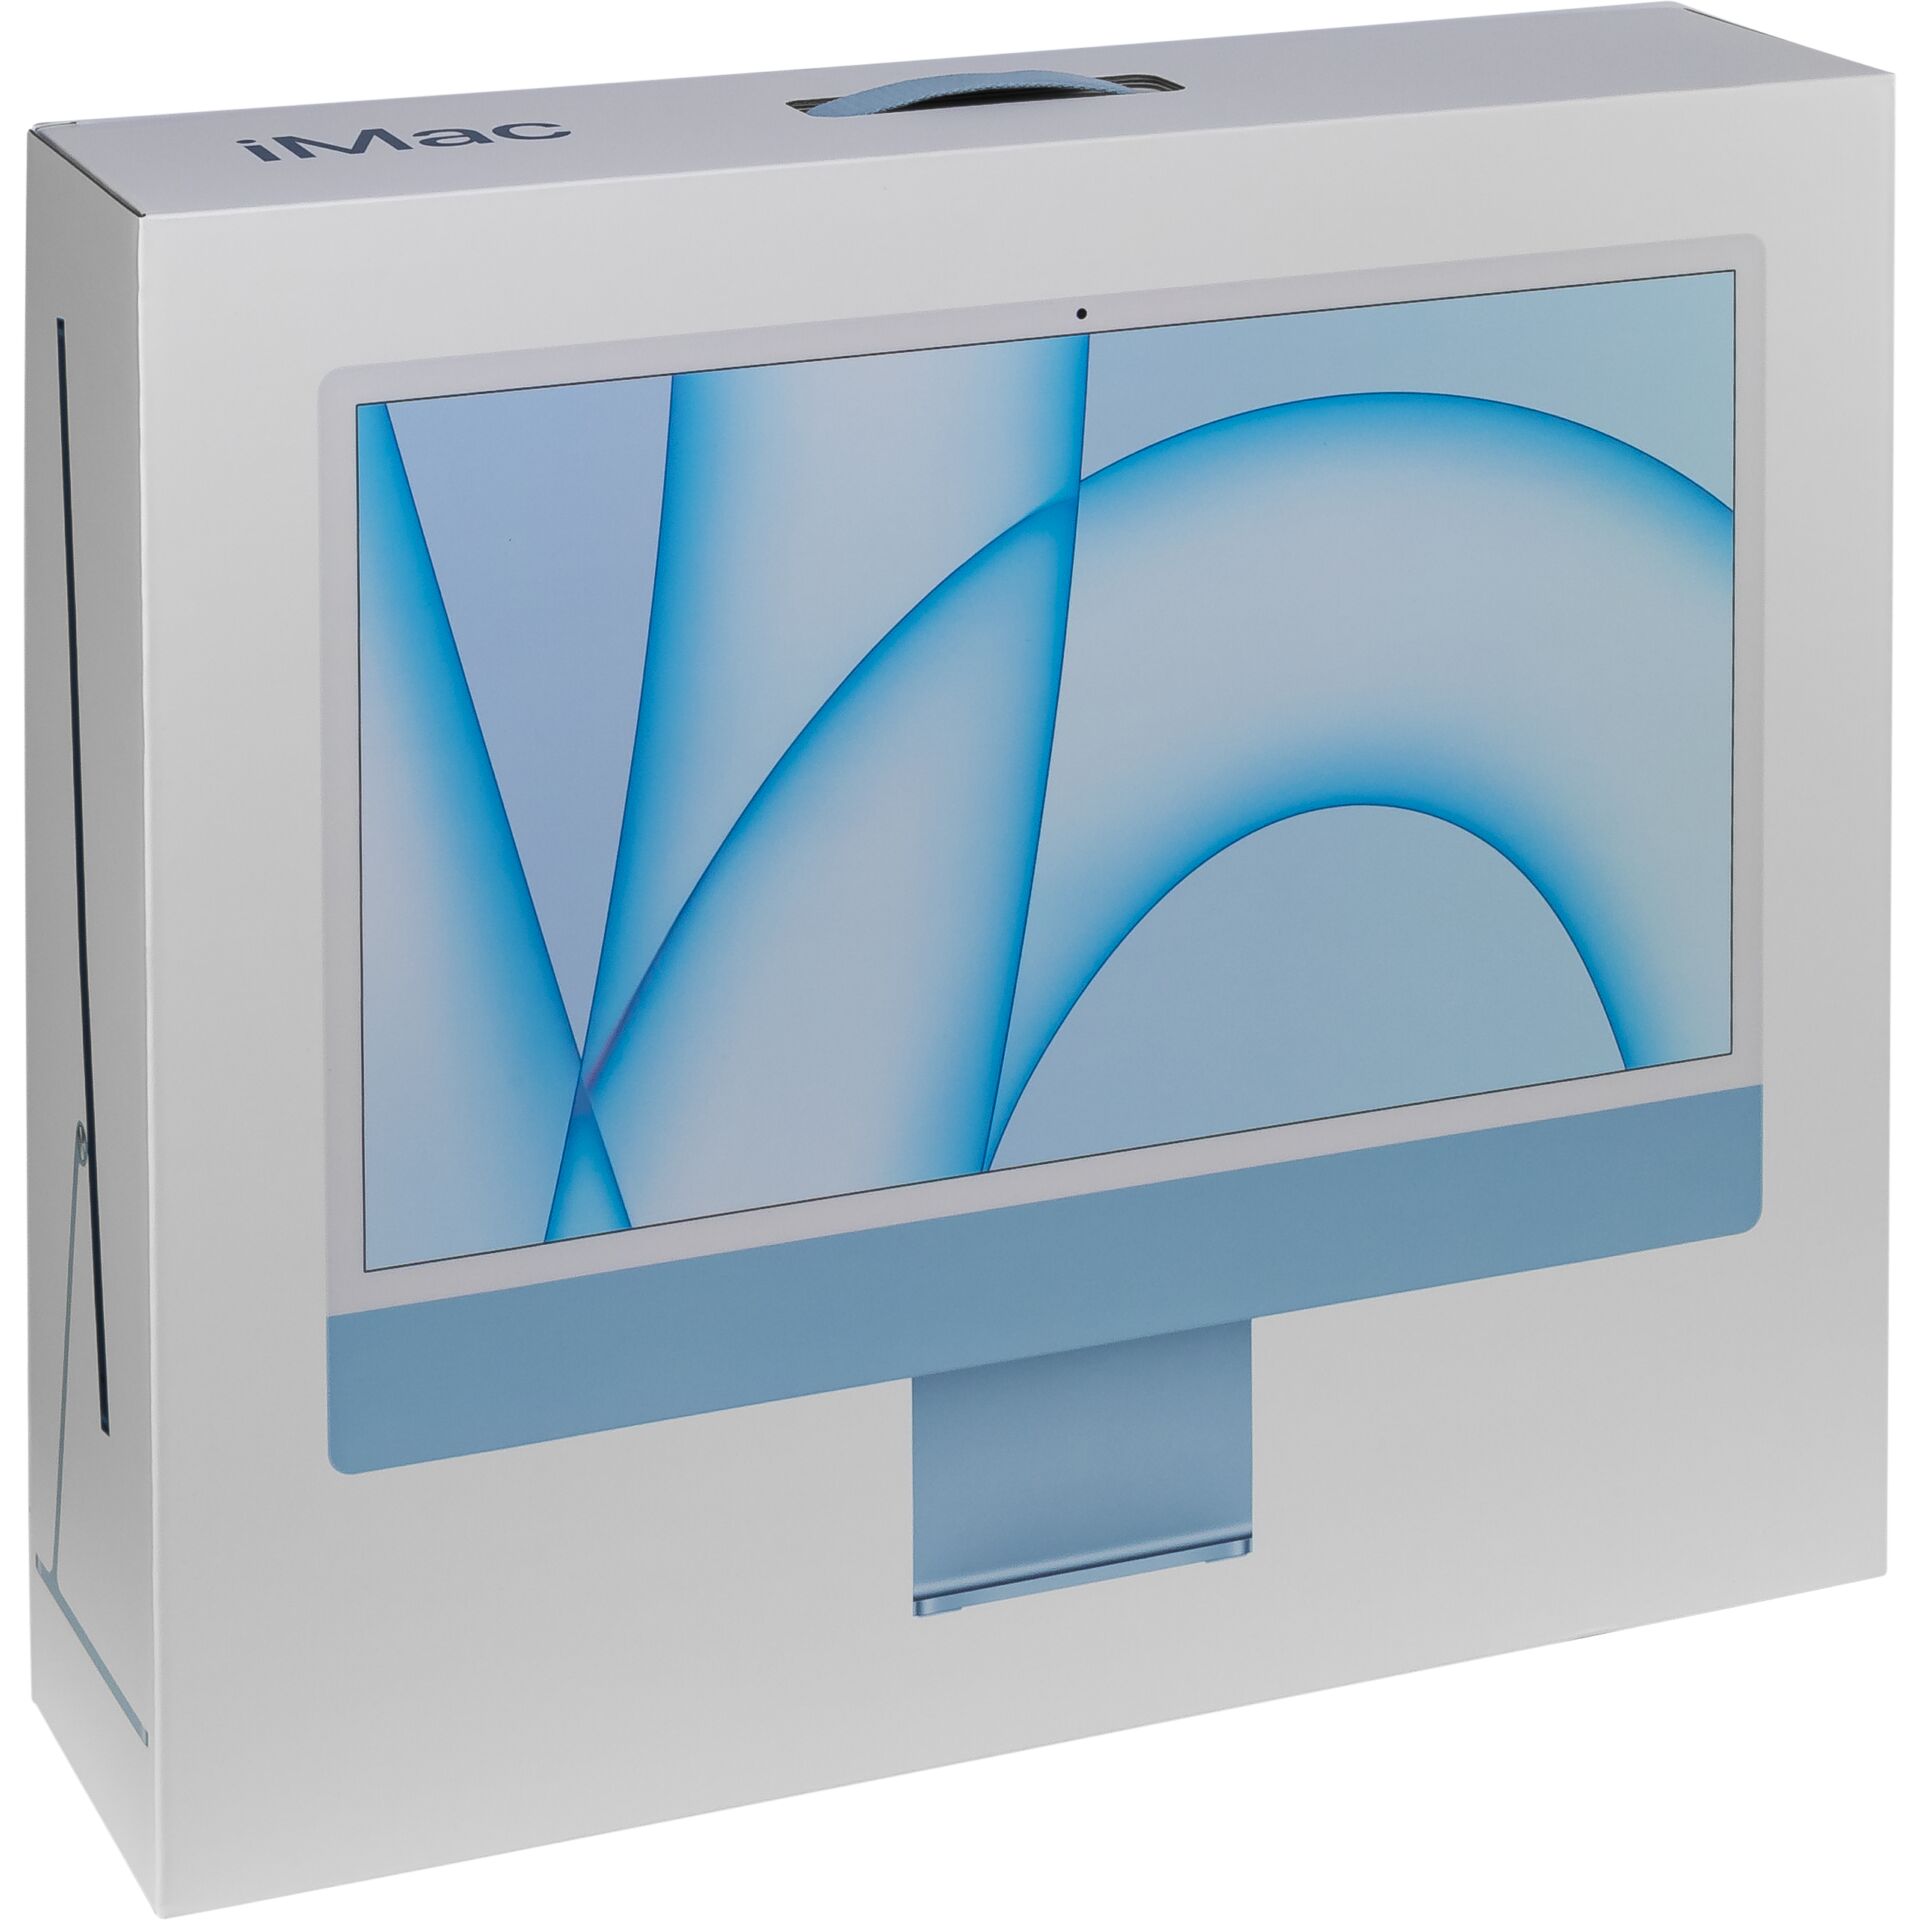 Apple iMac 24 blau, M1 - 8 Core CPU / 8 Core GPU, 8GB RAM, 256GB SSD, 1Gb LAN